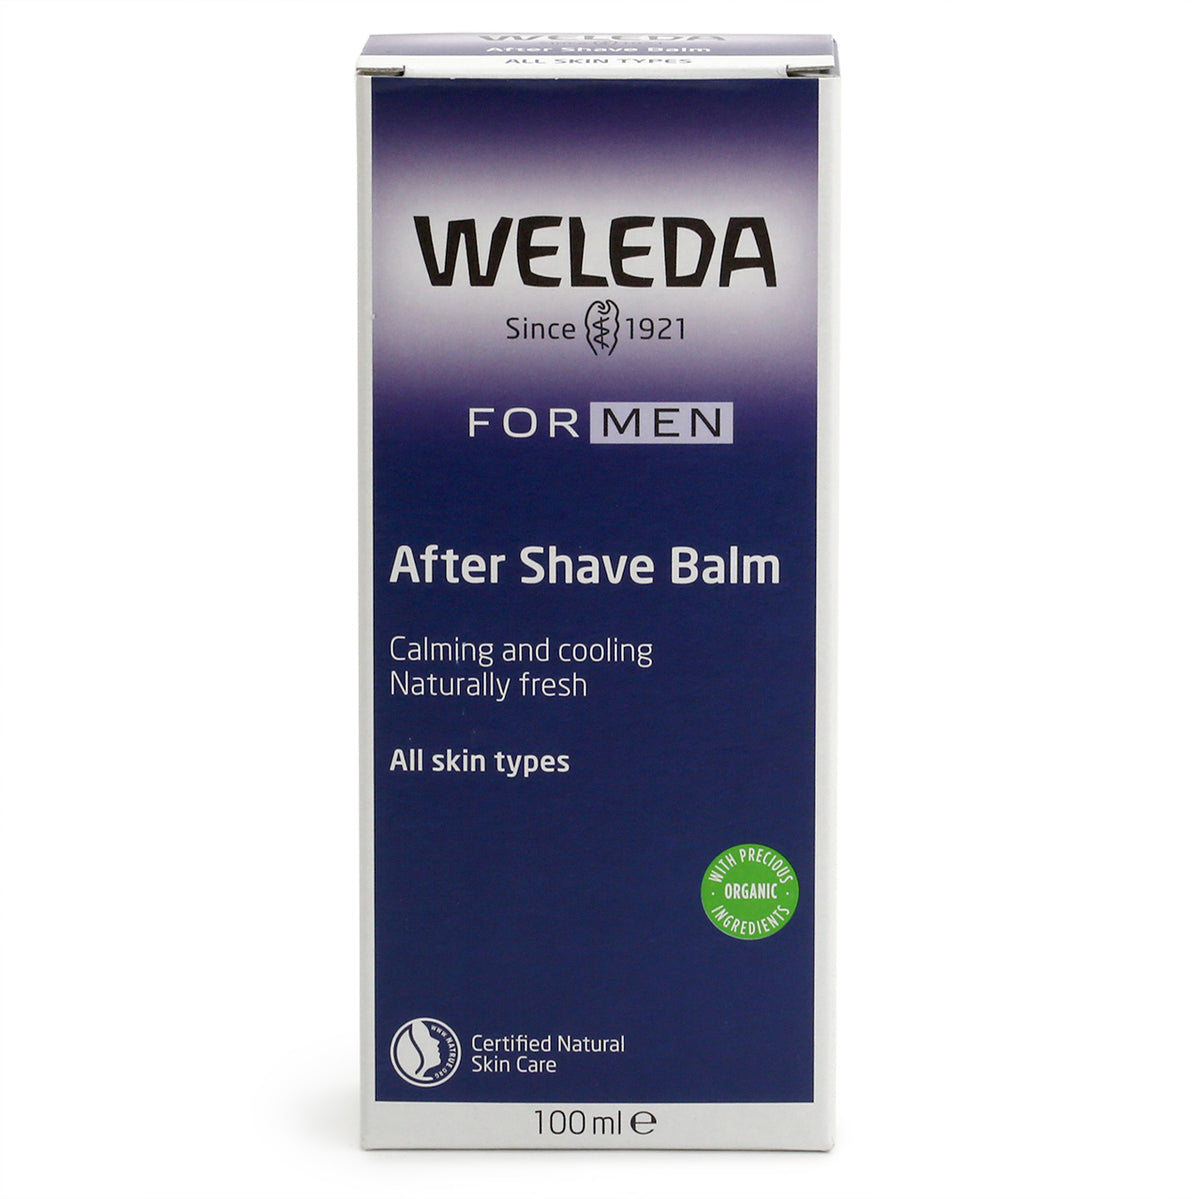 Weleda For Men After Shave Balm box